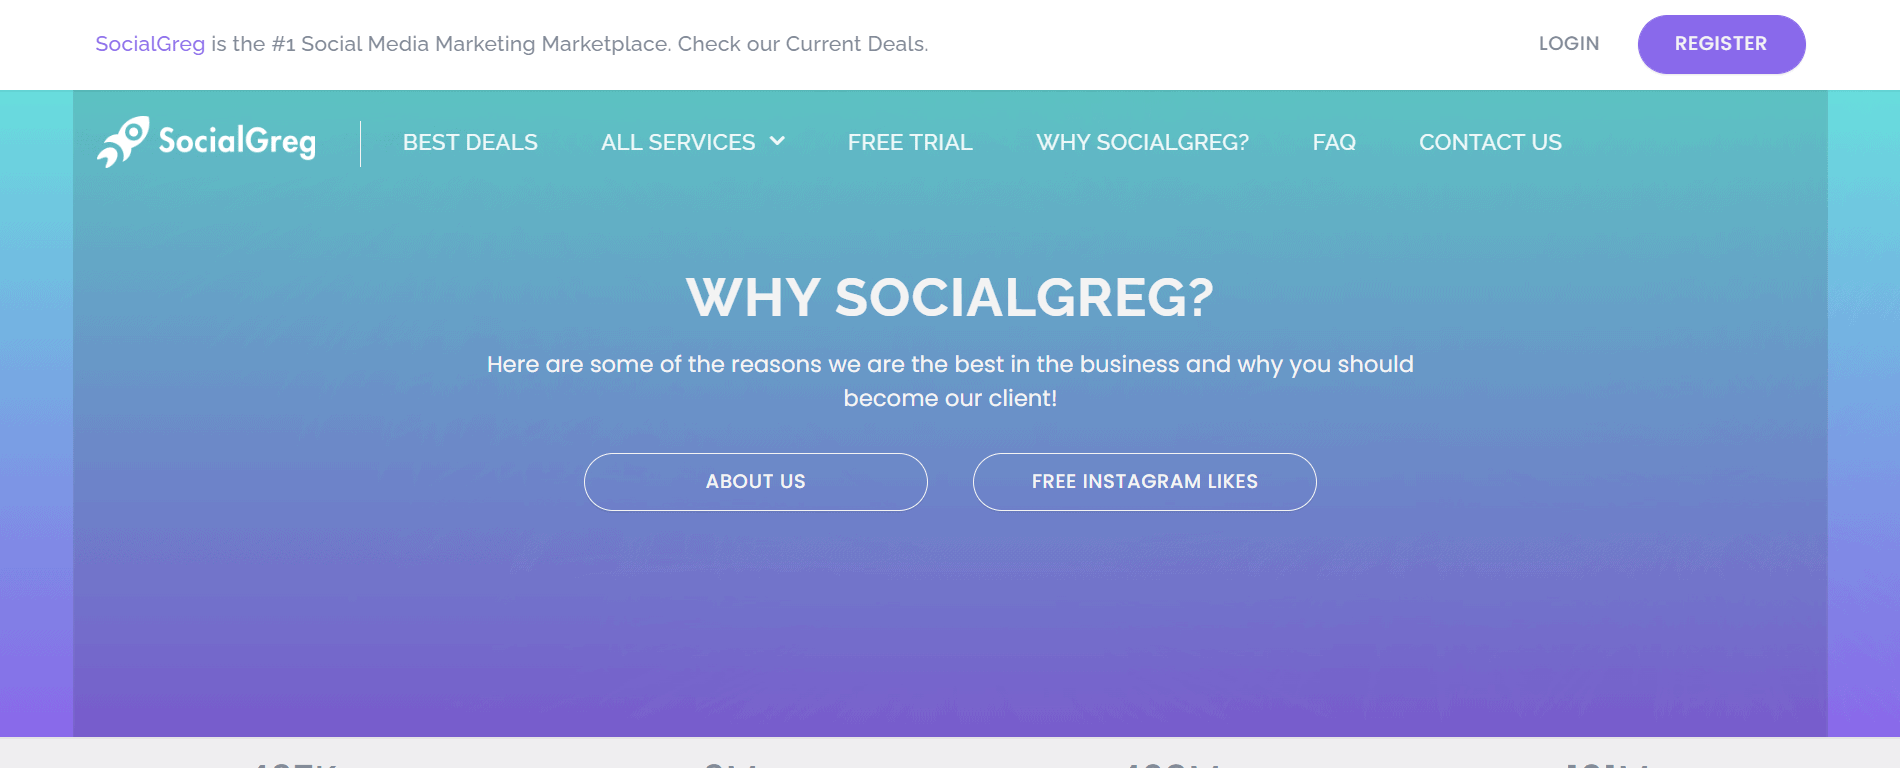 Why SocialGreg